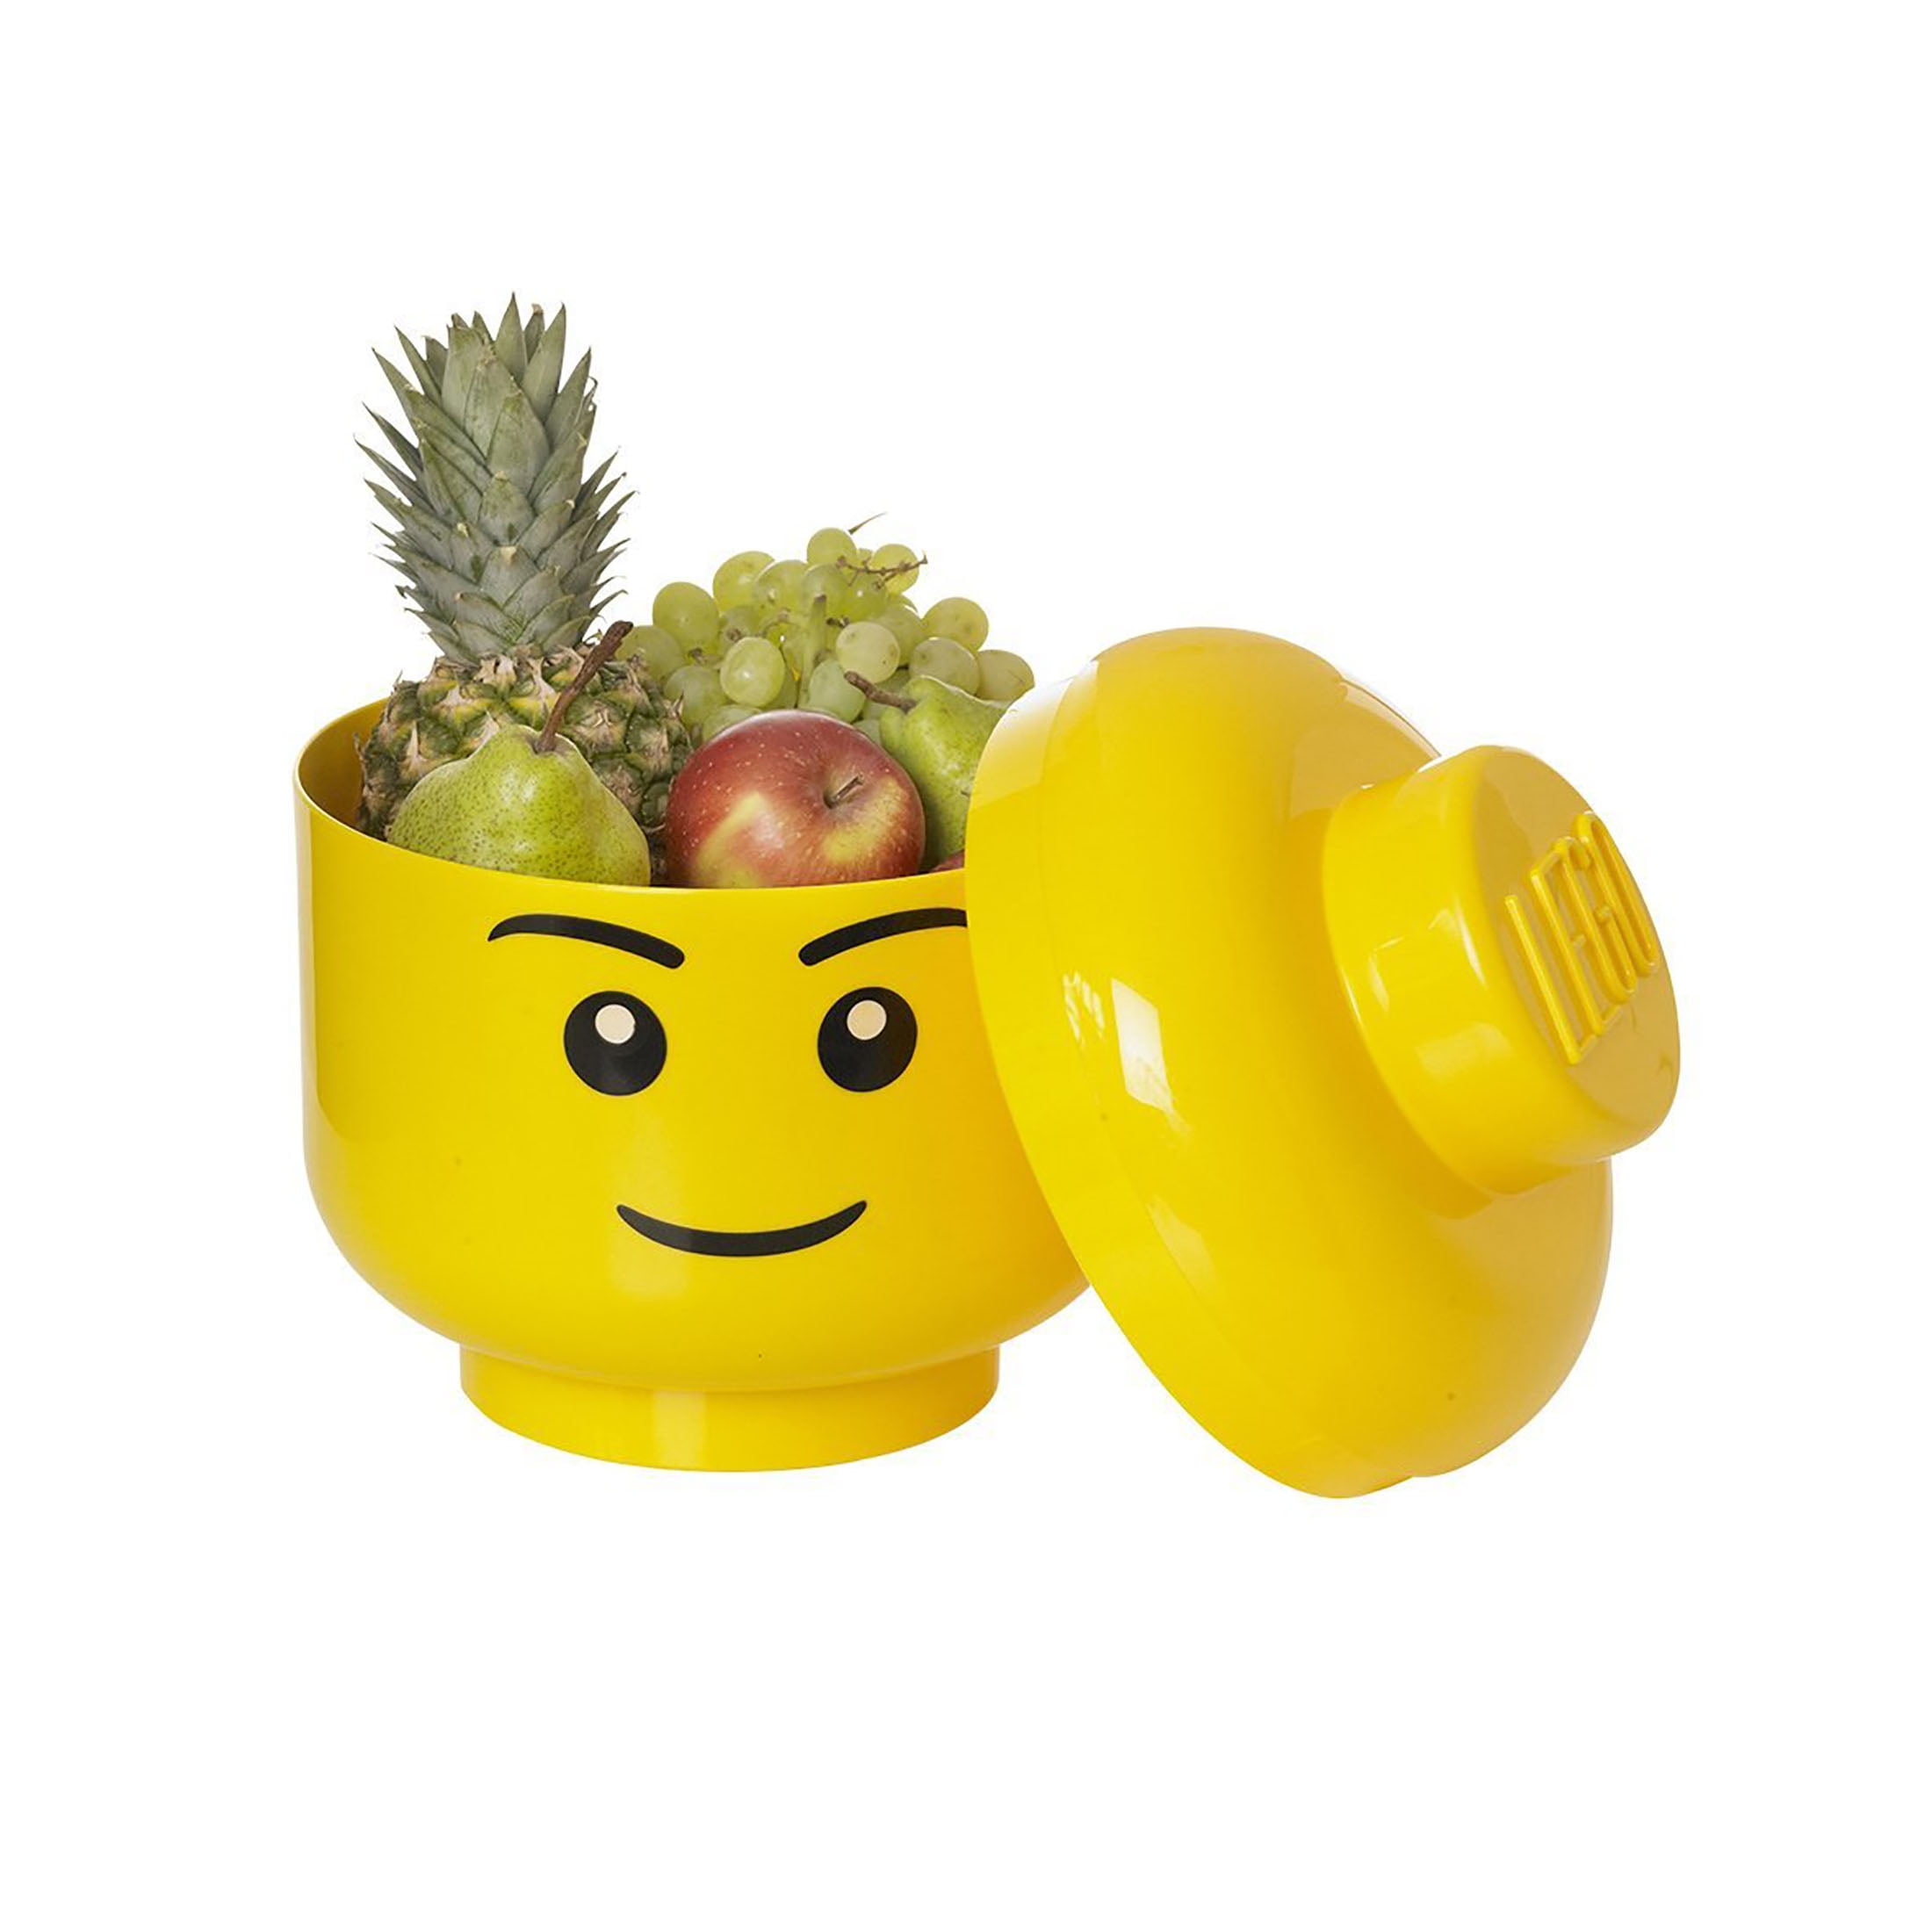 LEGO Construction Blocks Storage Head - - Boy - Walmart.com